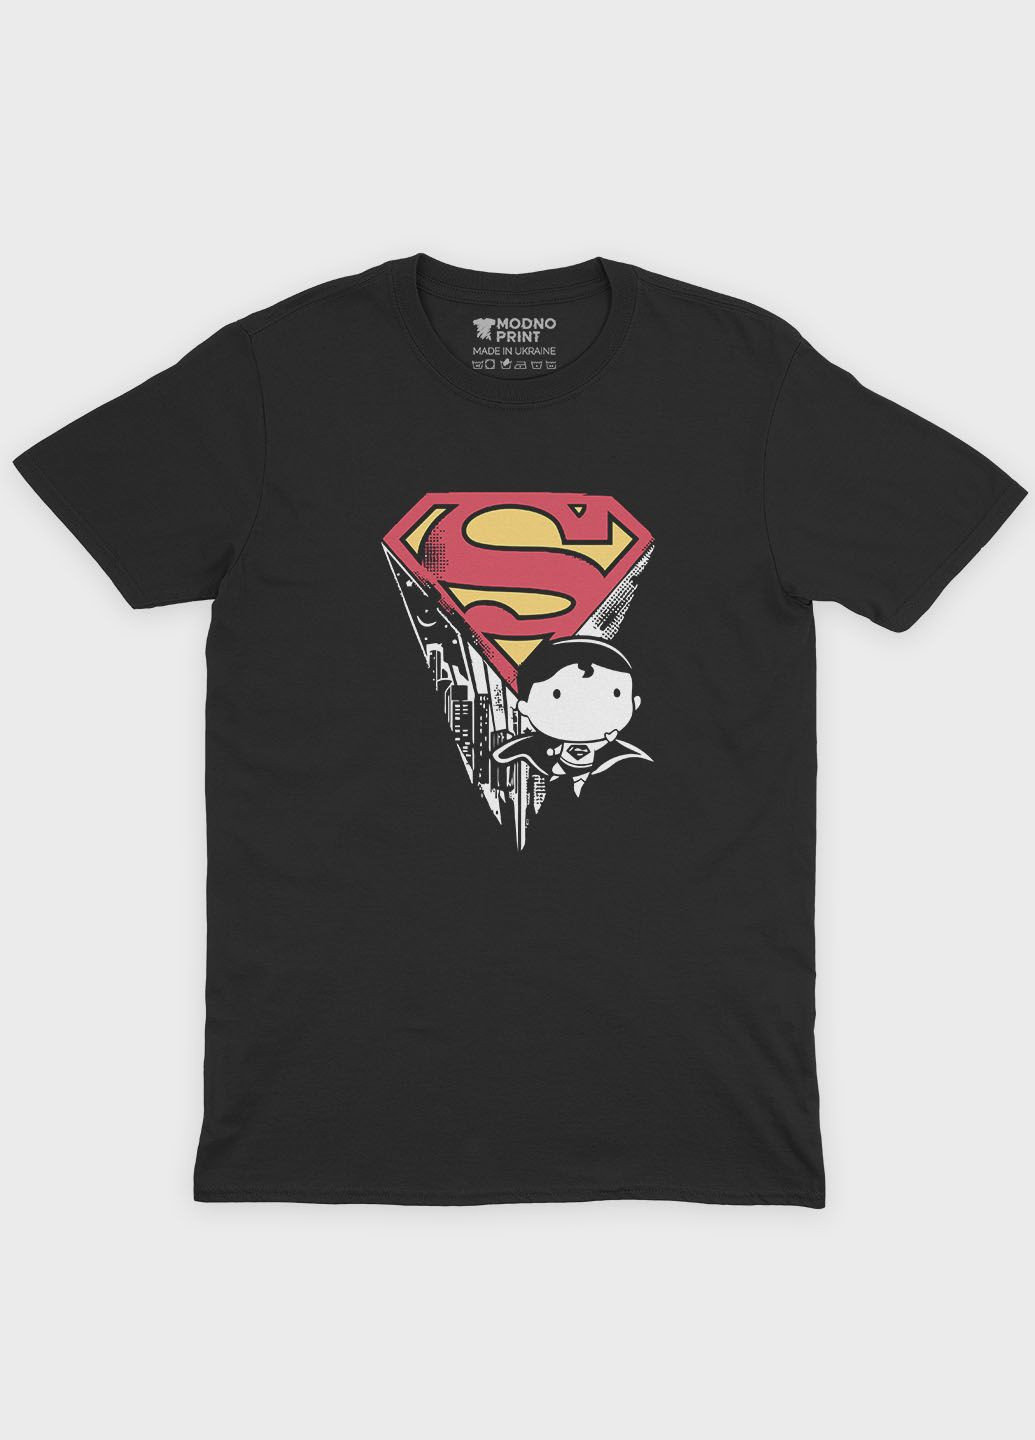 Черная летняя мужская футболка с принтом супергероя - супермен (ts001-1-bl-006-009-004-f) Modno